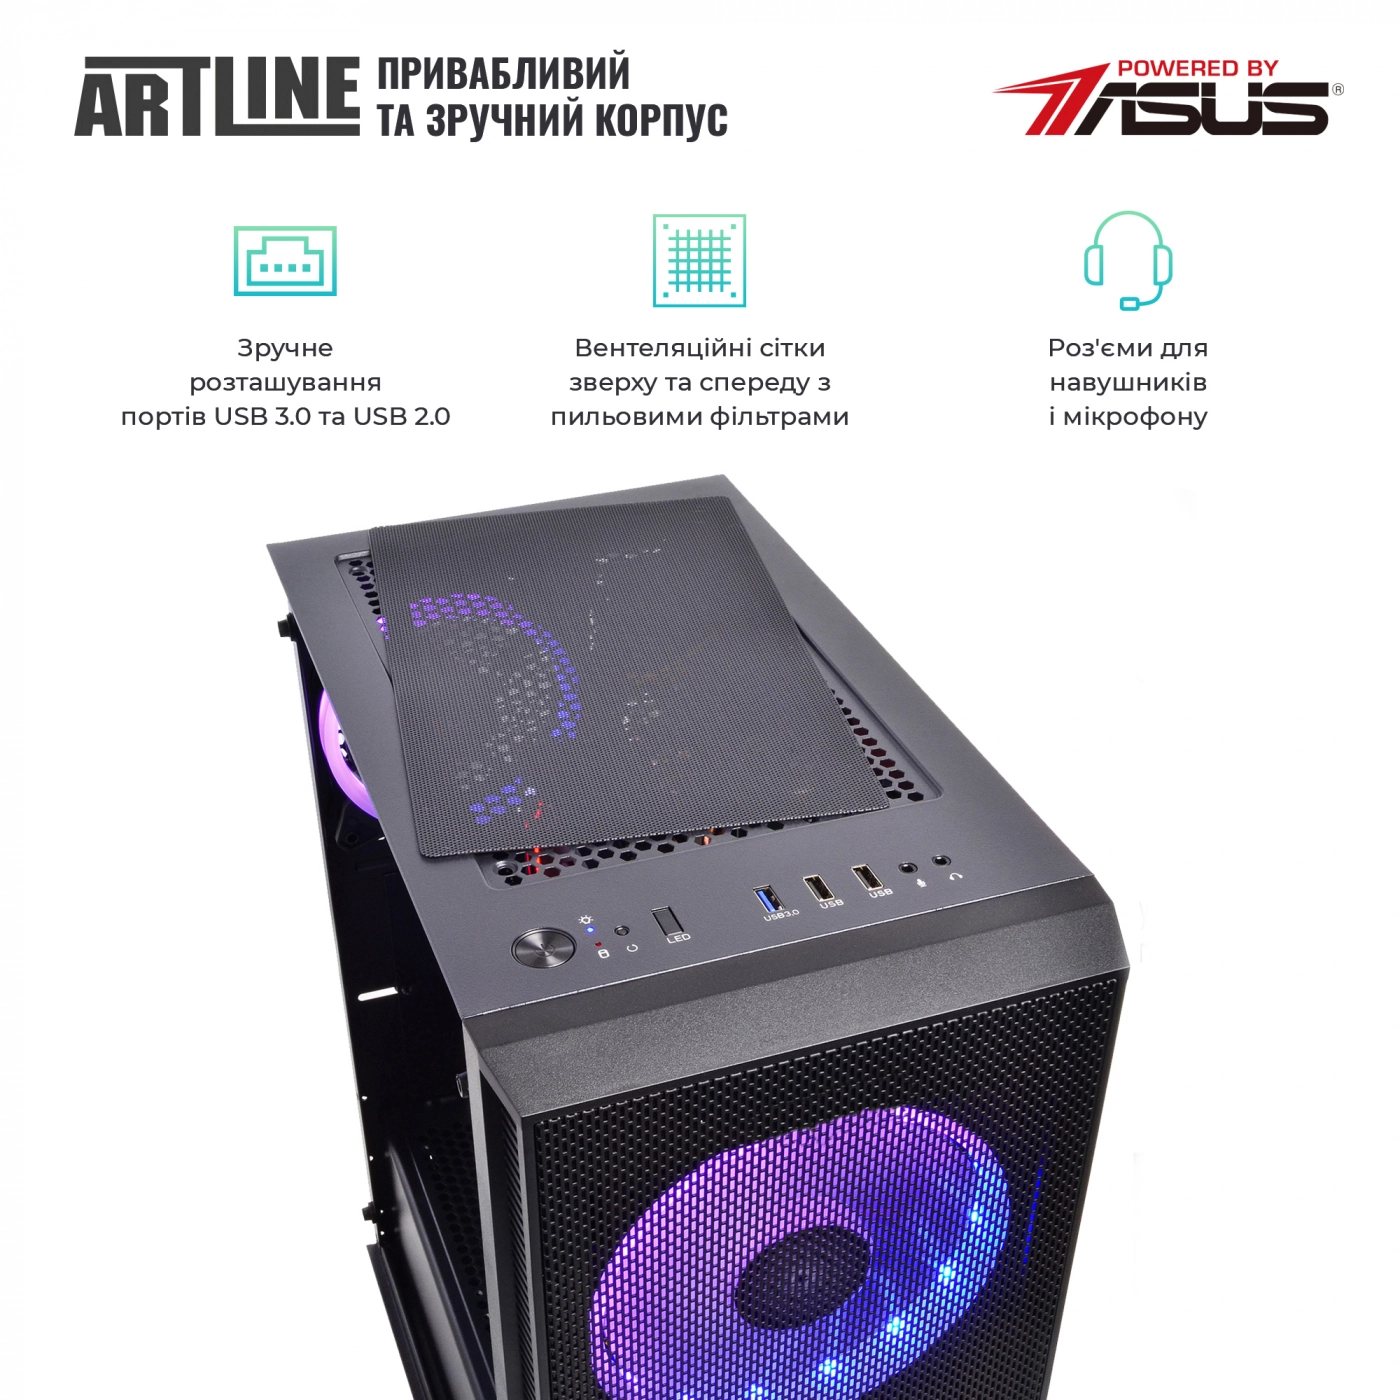 Купить Компьютер ARTLINE Gaming X81v20 - фото 4